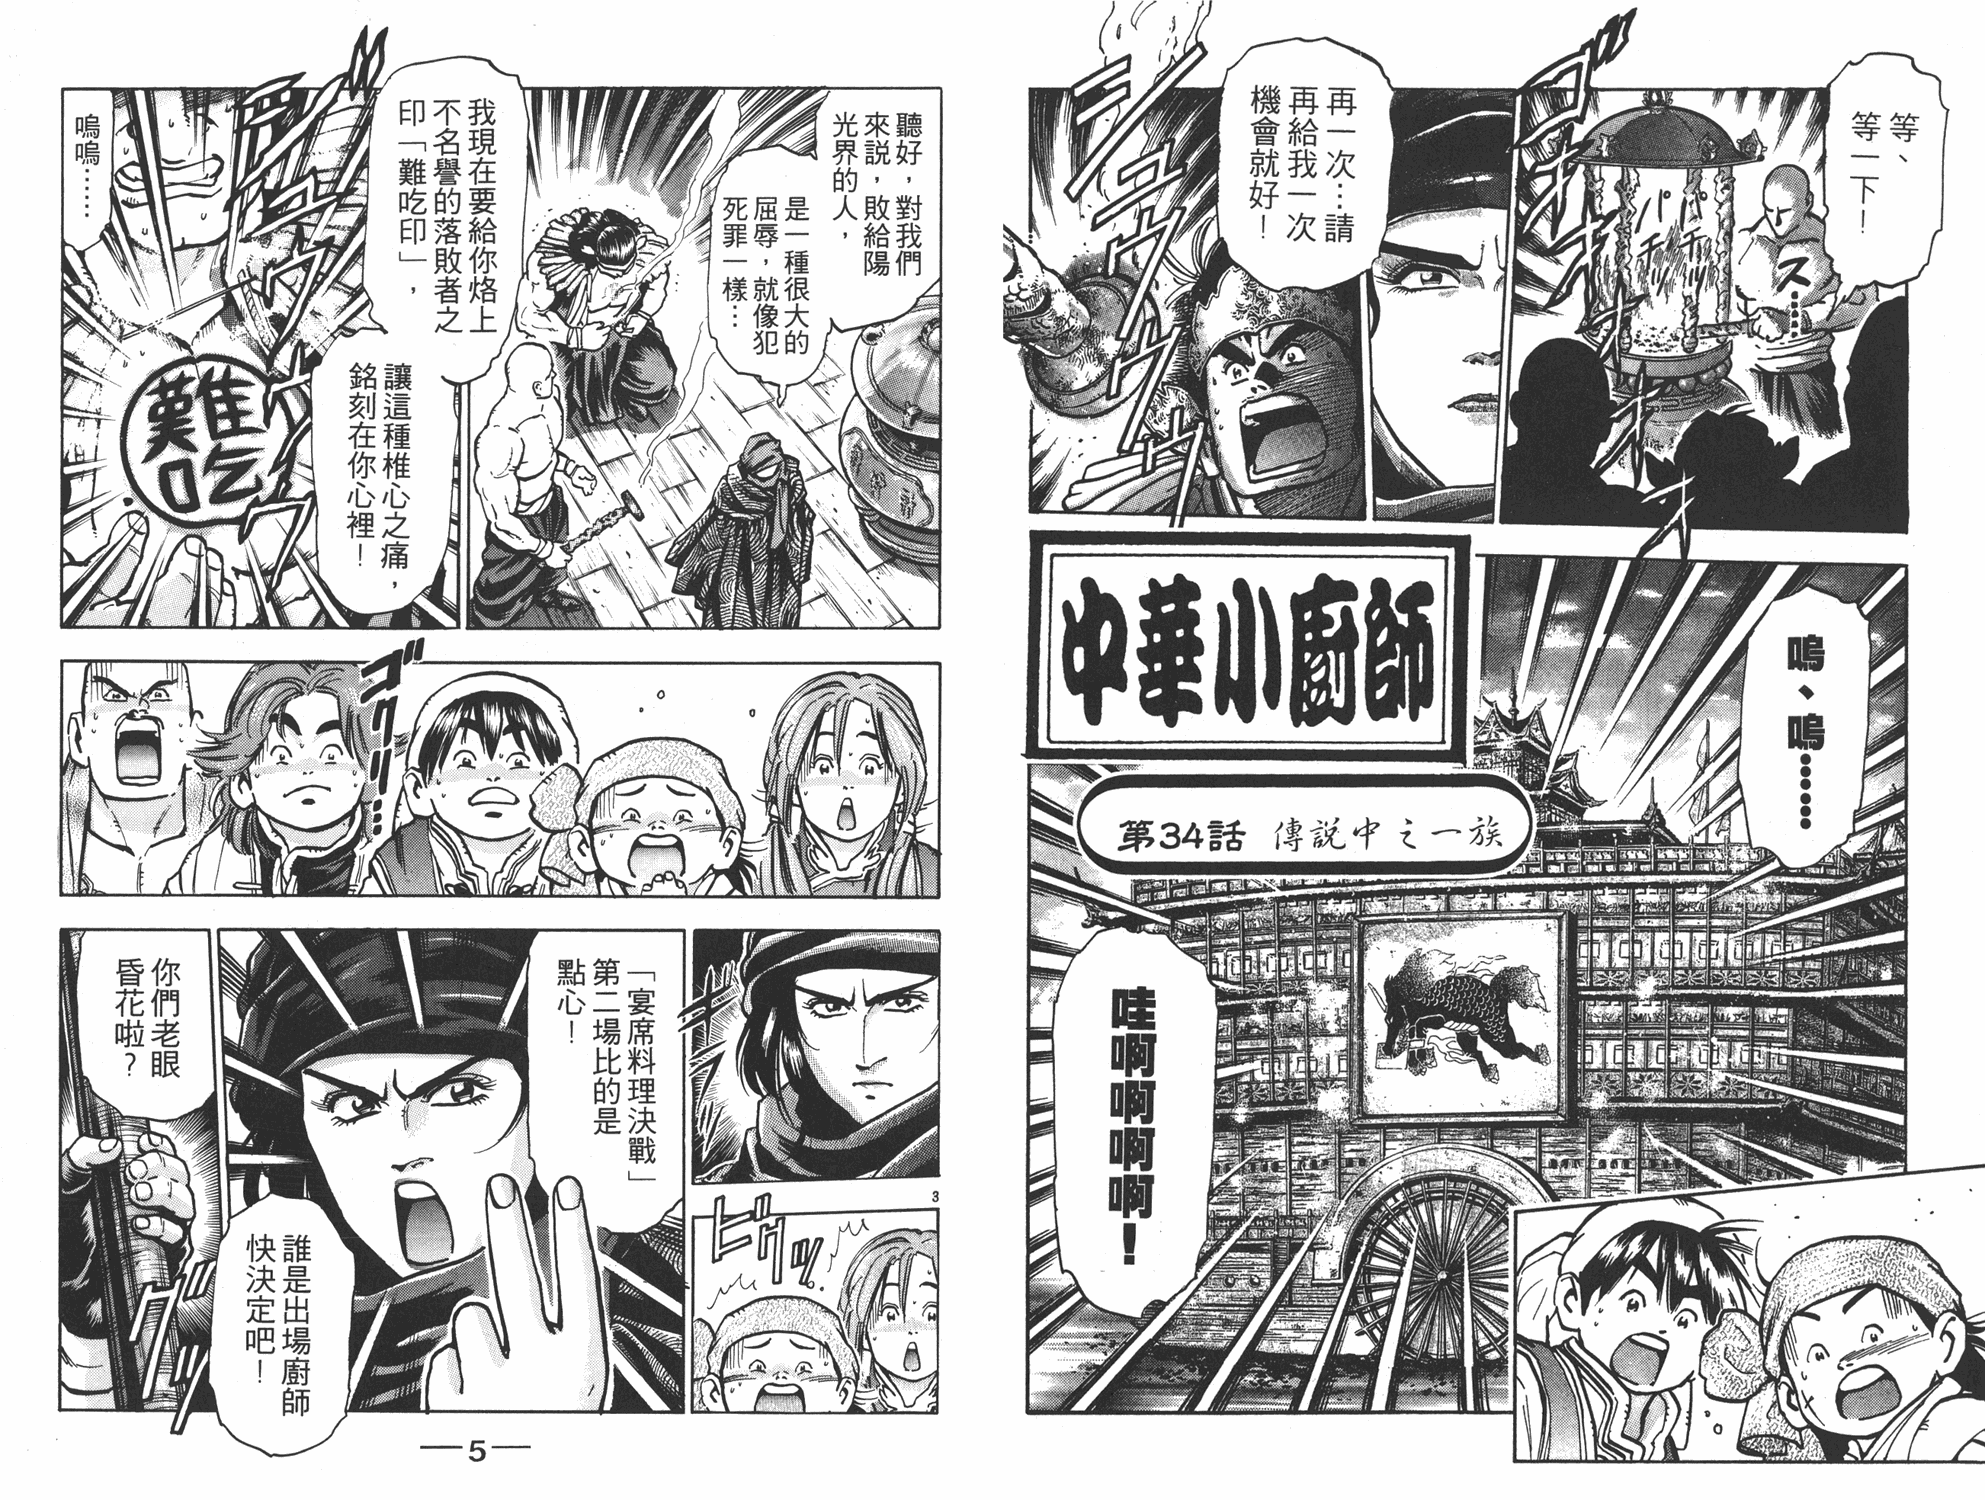 中华小当家国语版全集迅雷下载漫画,第10卷3图